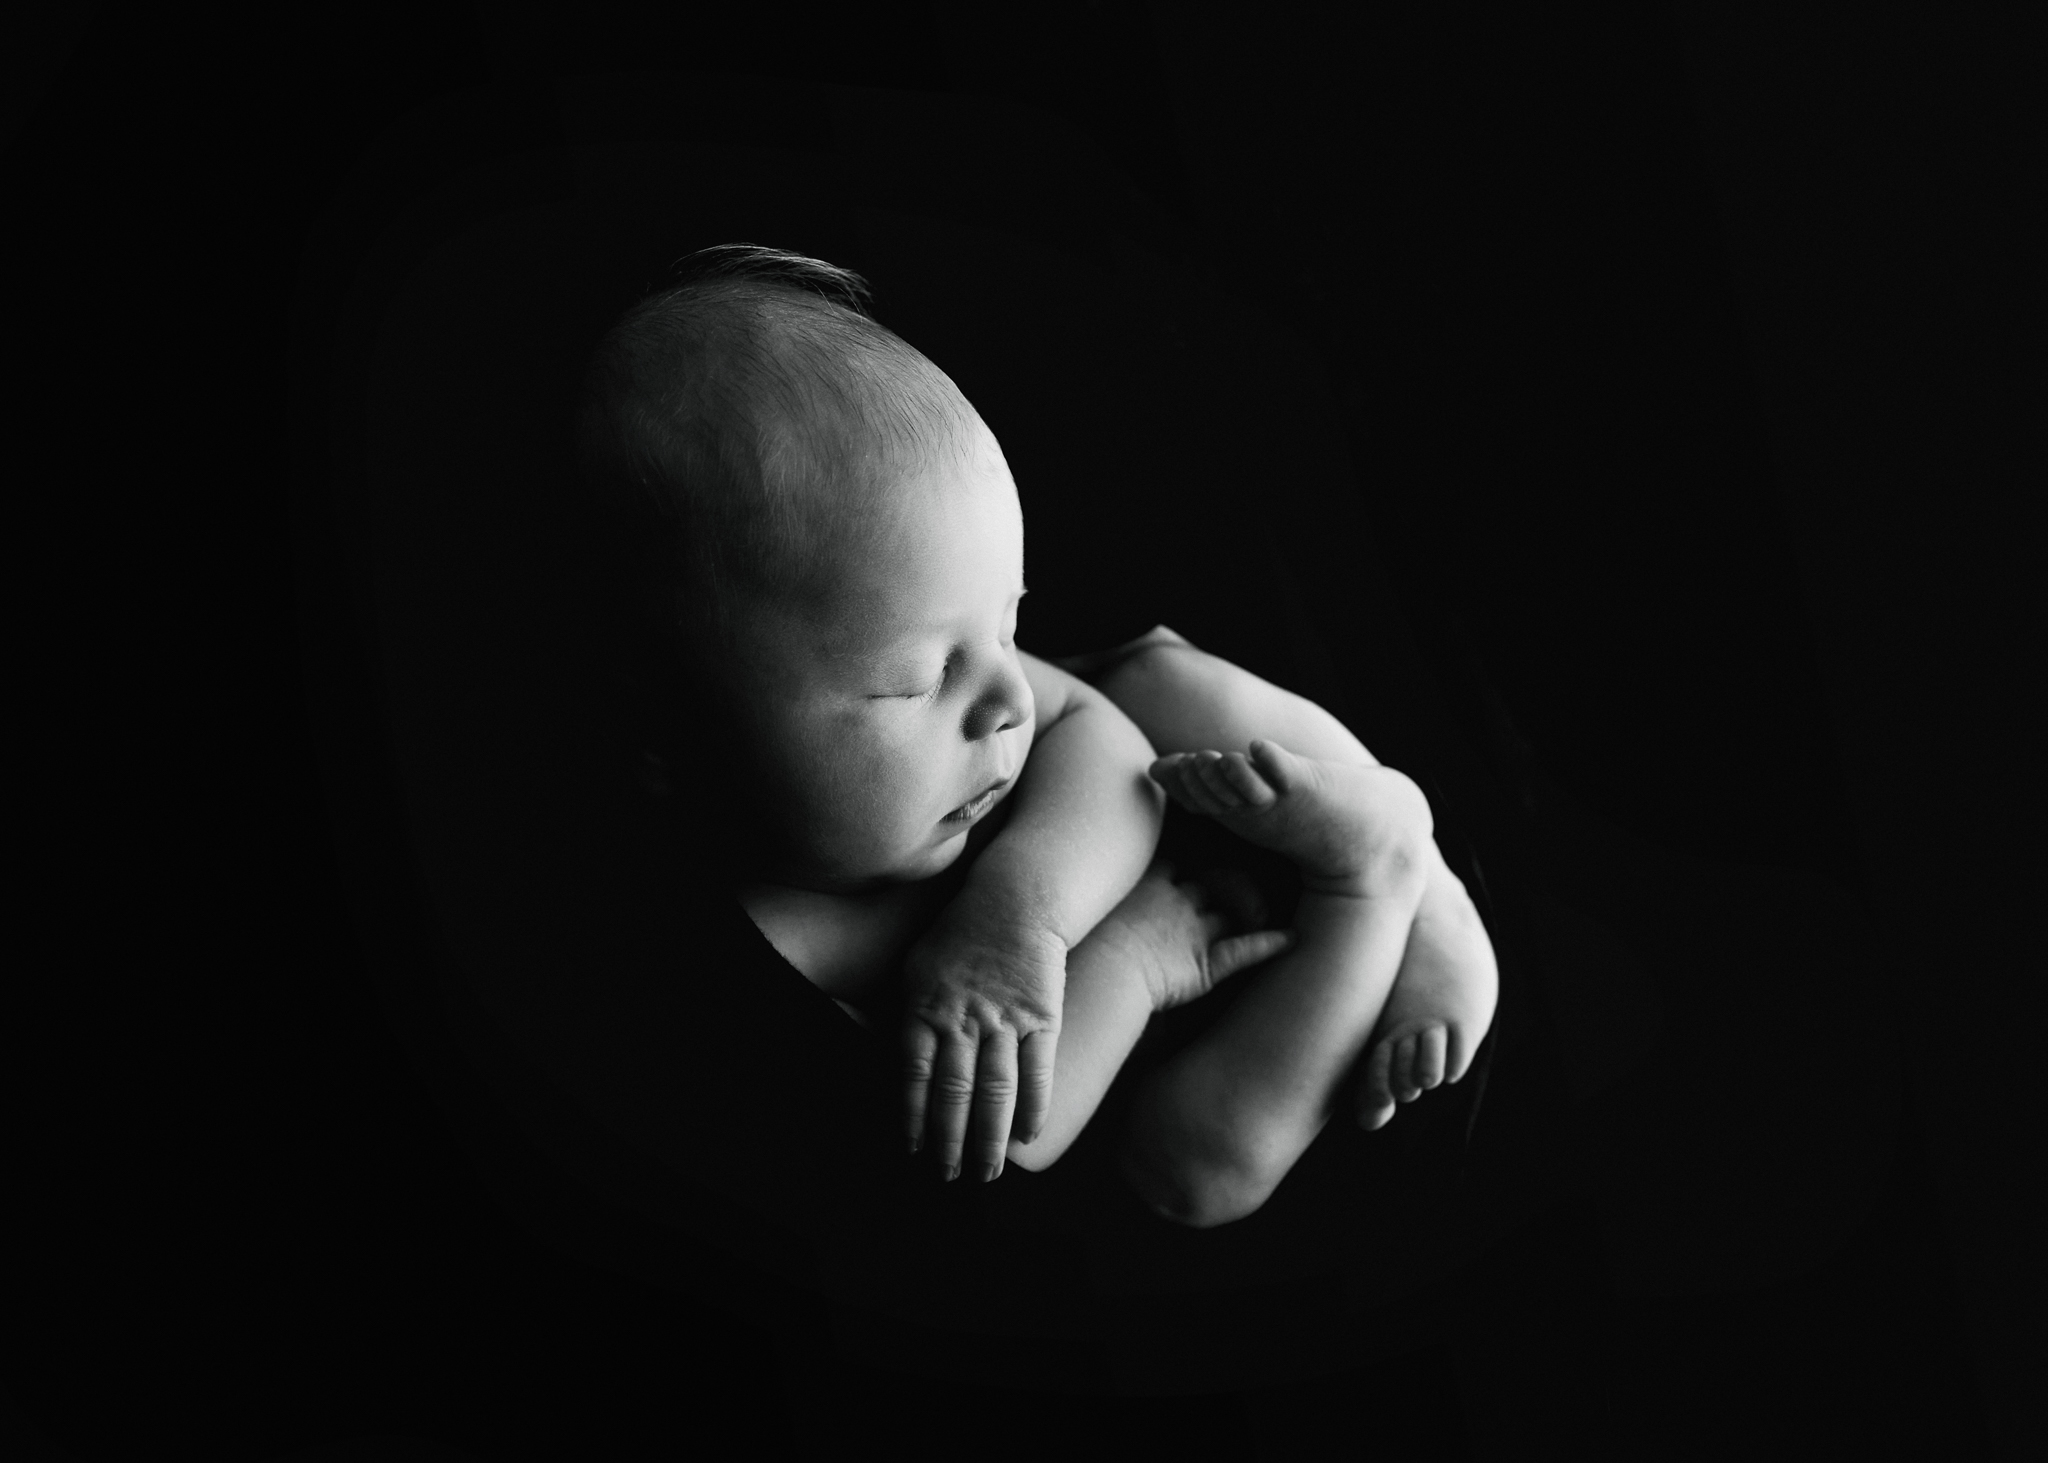 natural newborn photographer aberdeen